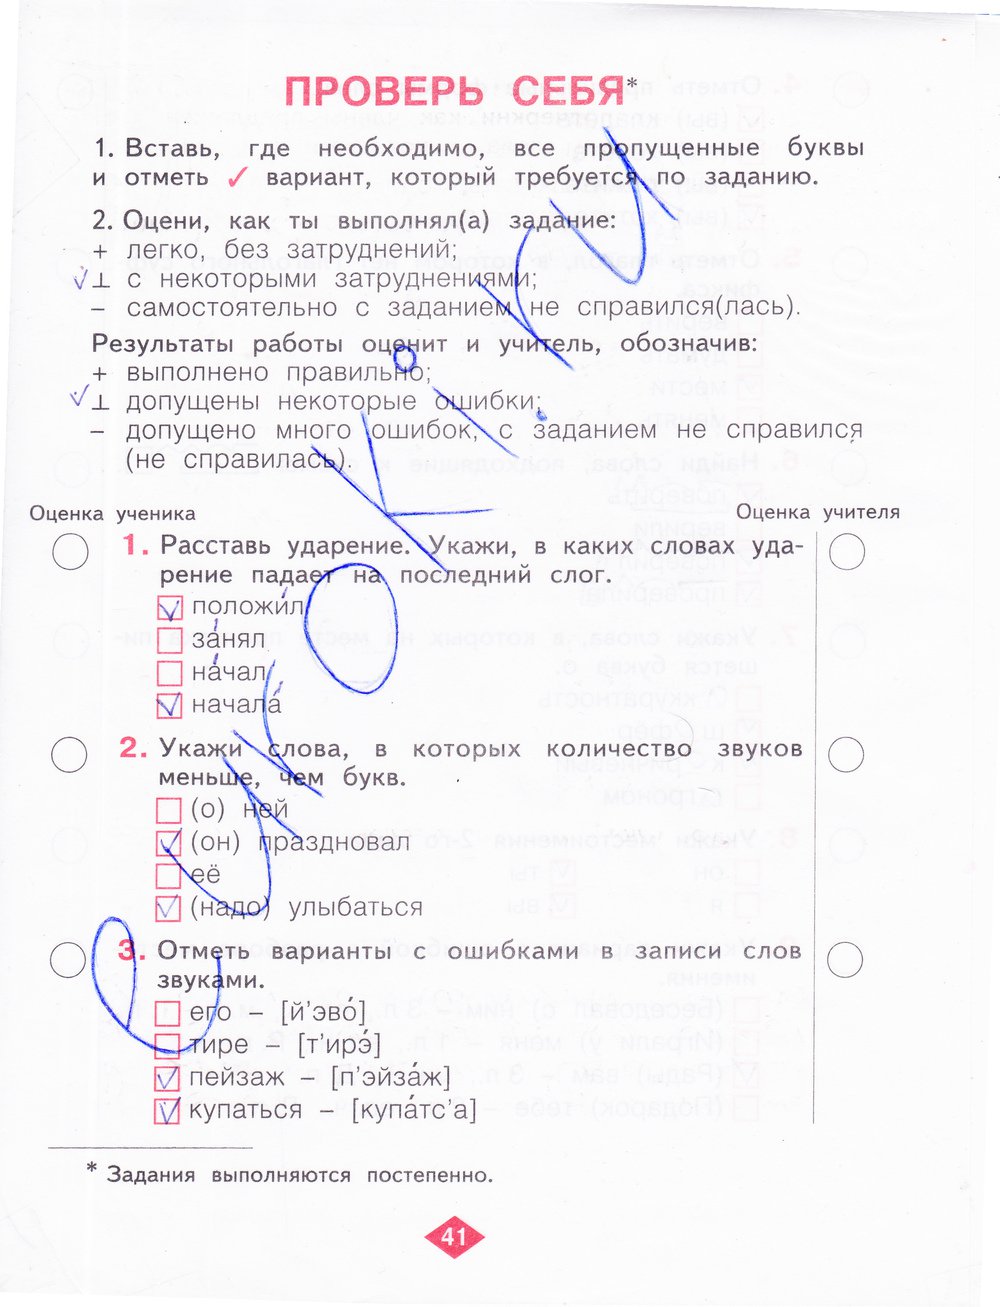 гдз 4 класс рабочая тетрадь часть 2 страница 41 русский язык Нечаева, Воскресенская